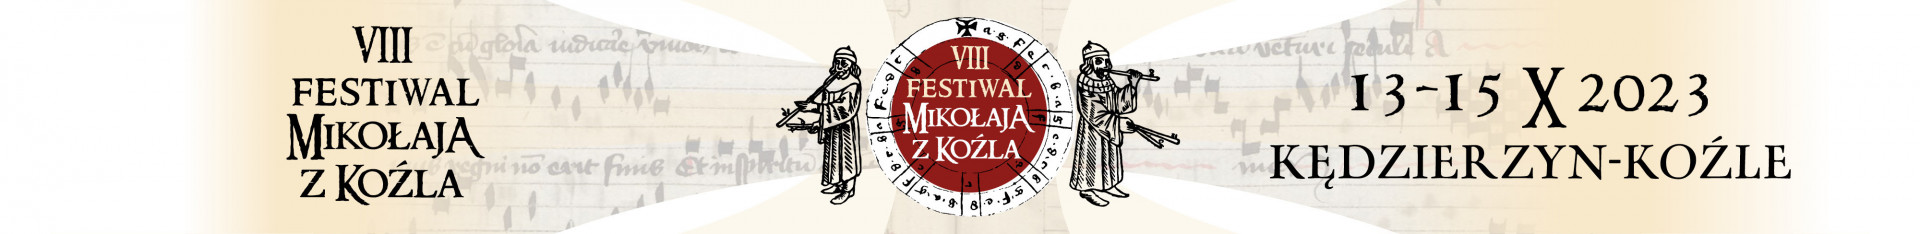 VIII Festiwal Mikołaja z Koźla 2023